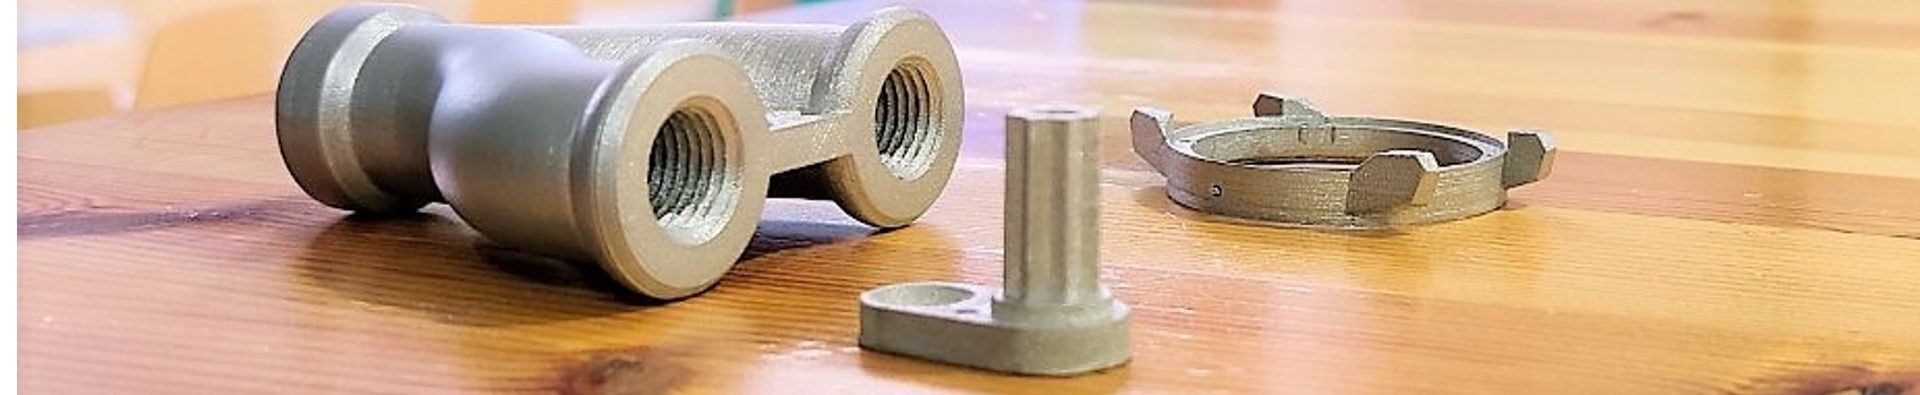 Maker3D ja metallien 3D-tulostus